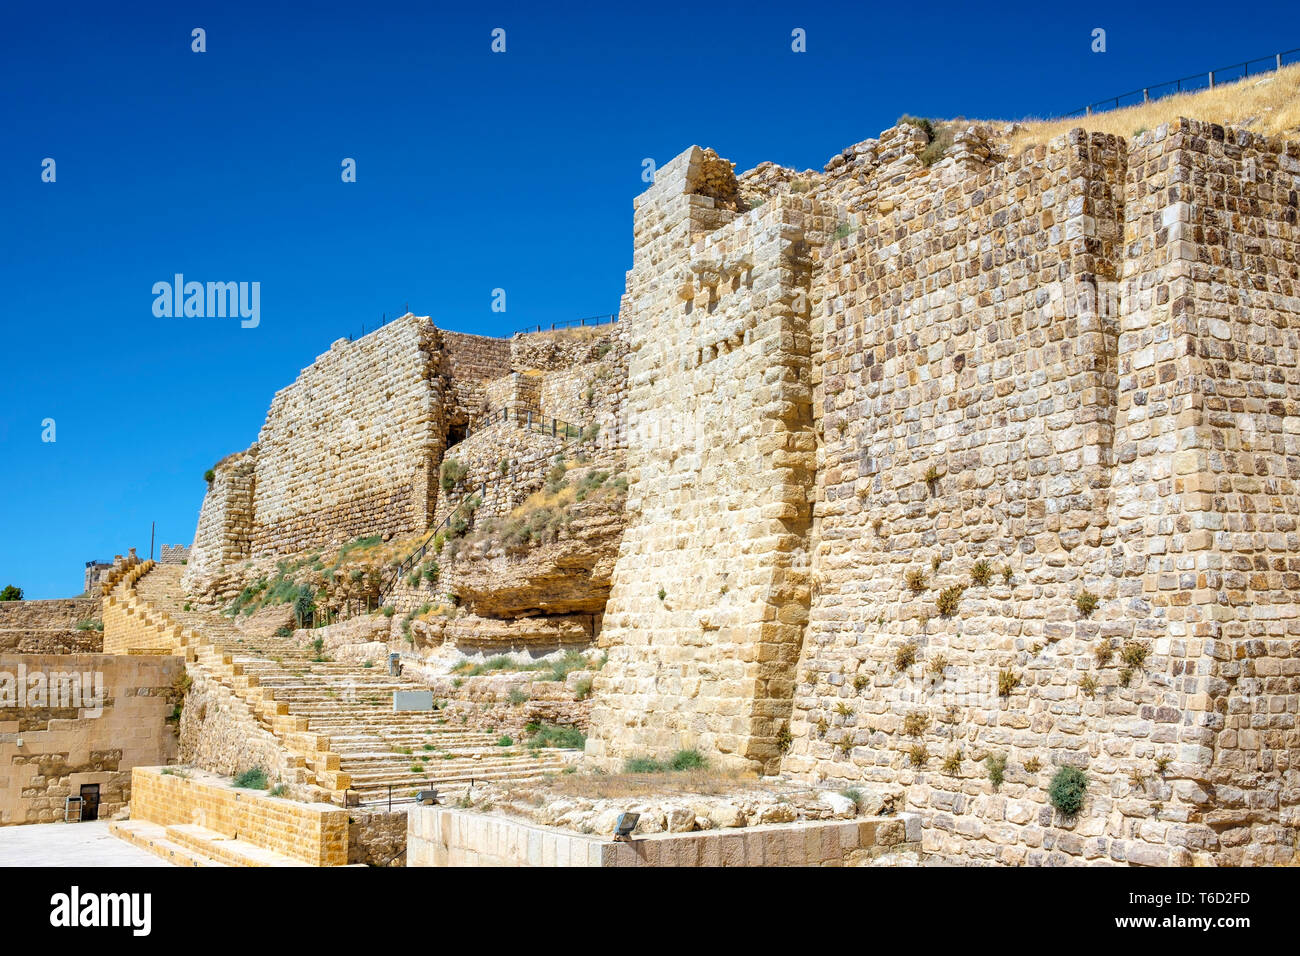 La Jordanie, Karak Gouvernorat, Al-Karak. Château de Kerak, 12e siècle château des Croisés, l'un des plus grands châteaux des Croisés dans le Levant. Banque D'Images